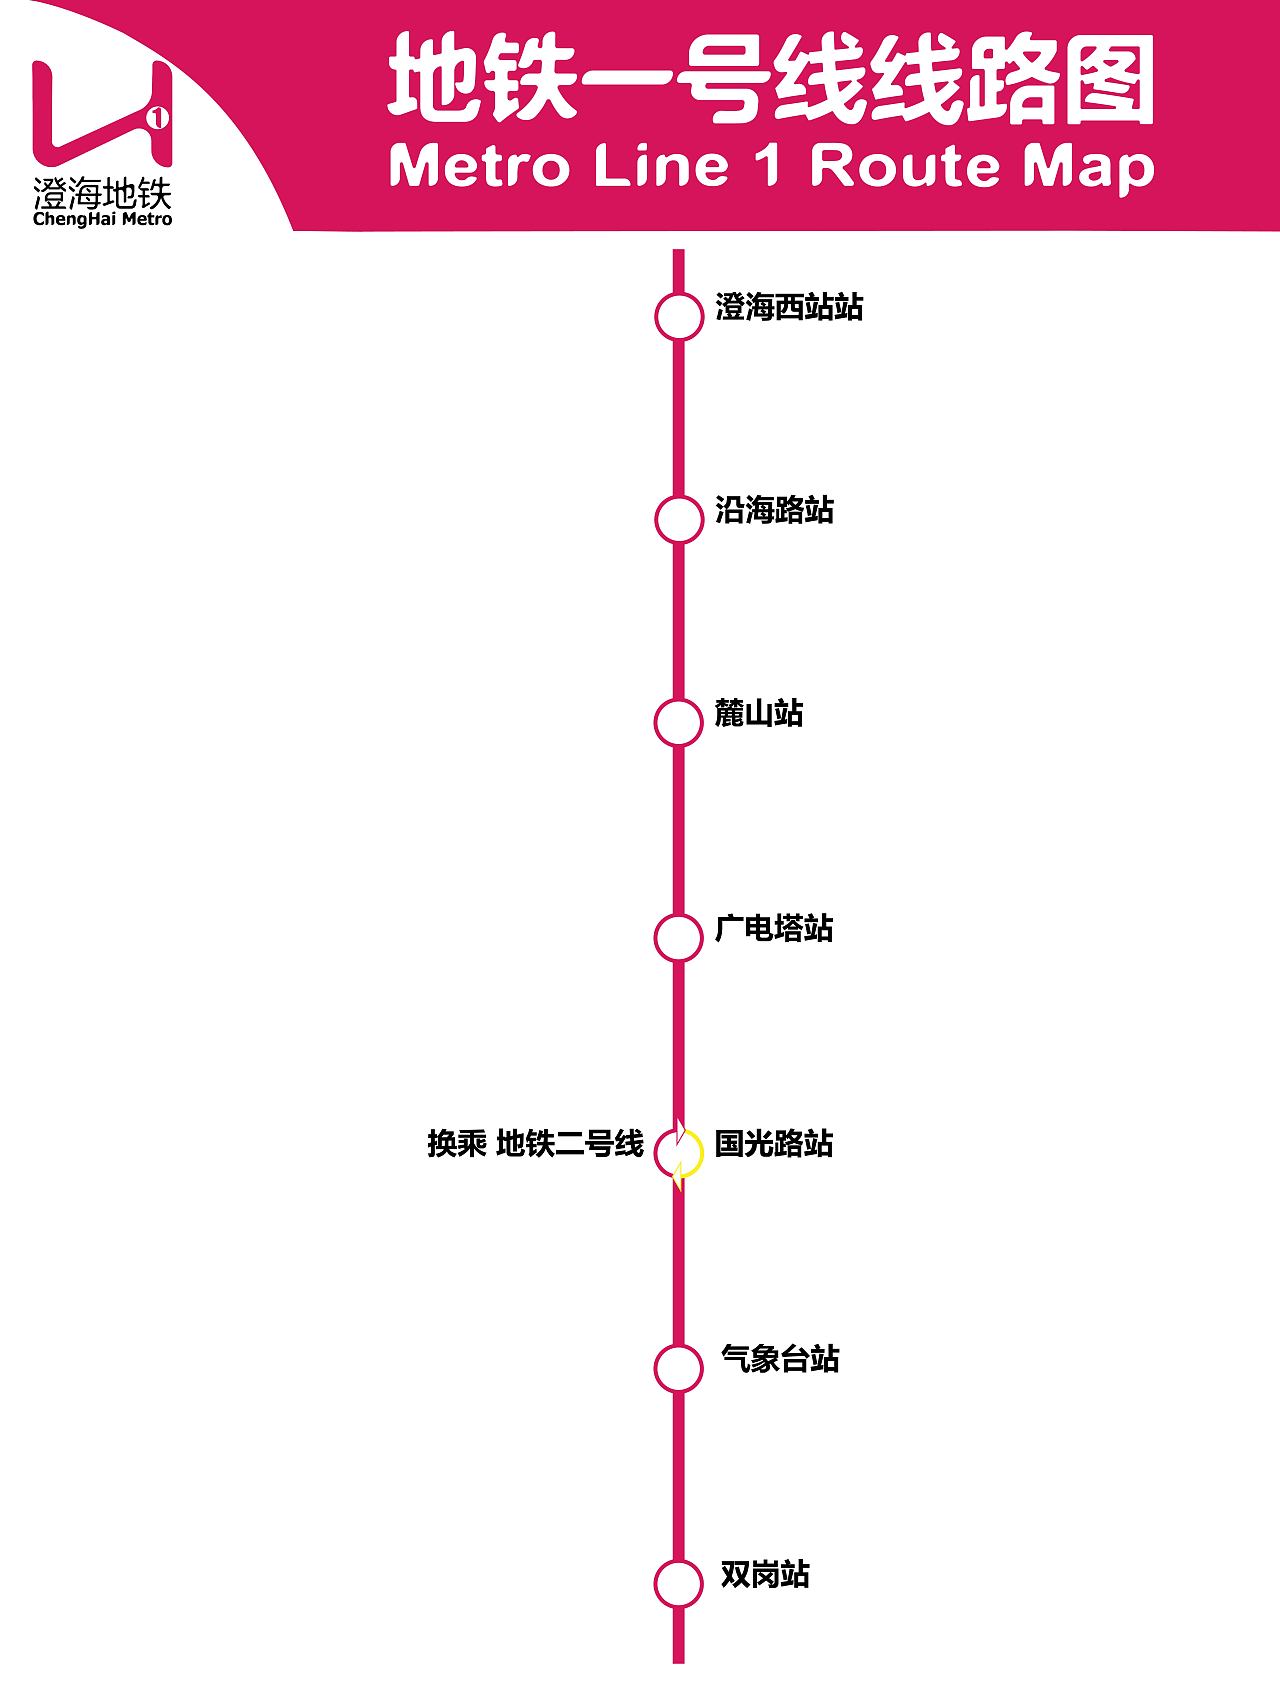 地铁一号线线路图,主题色